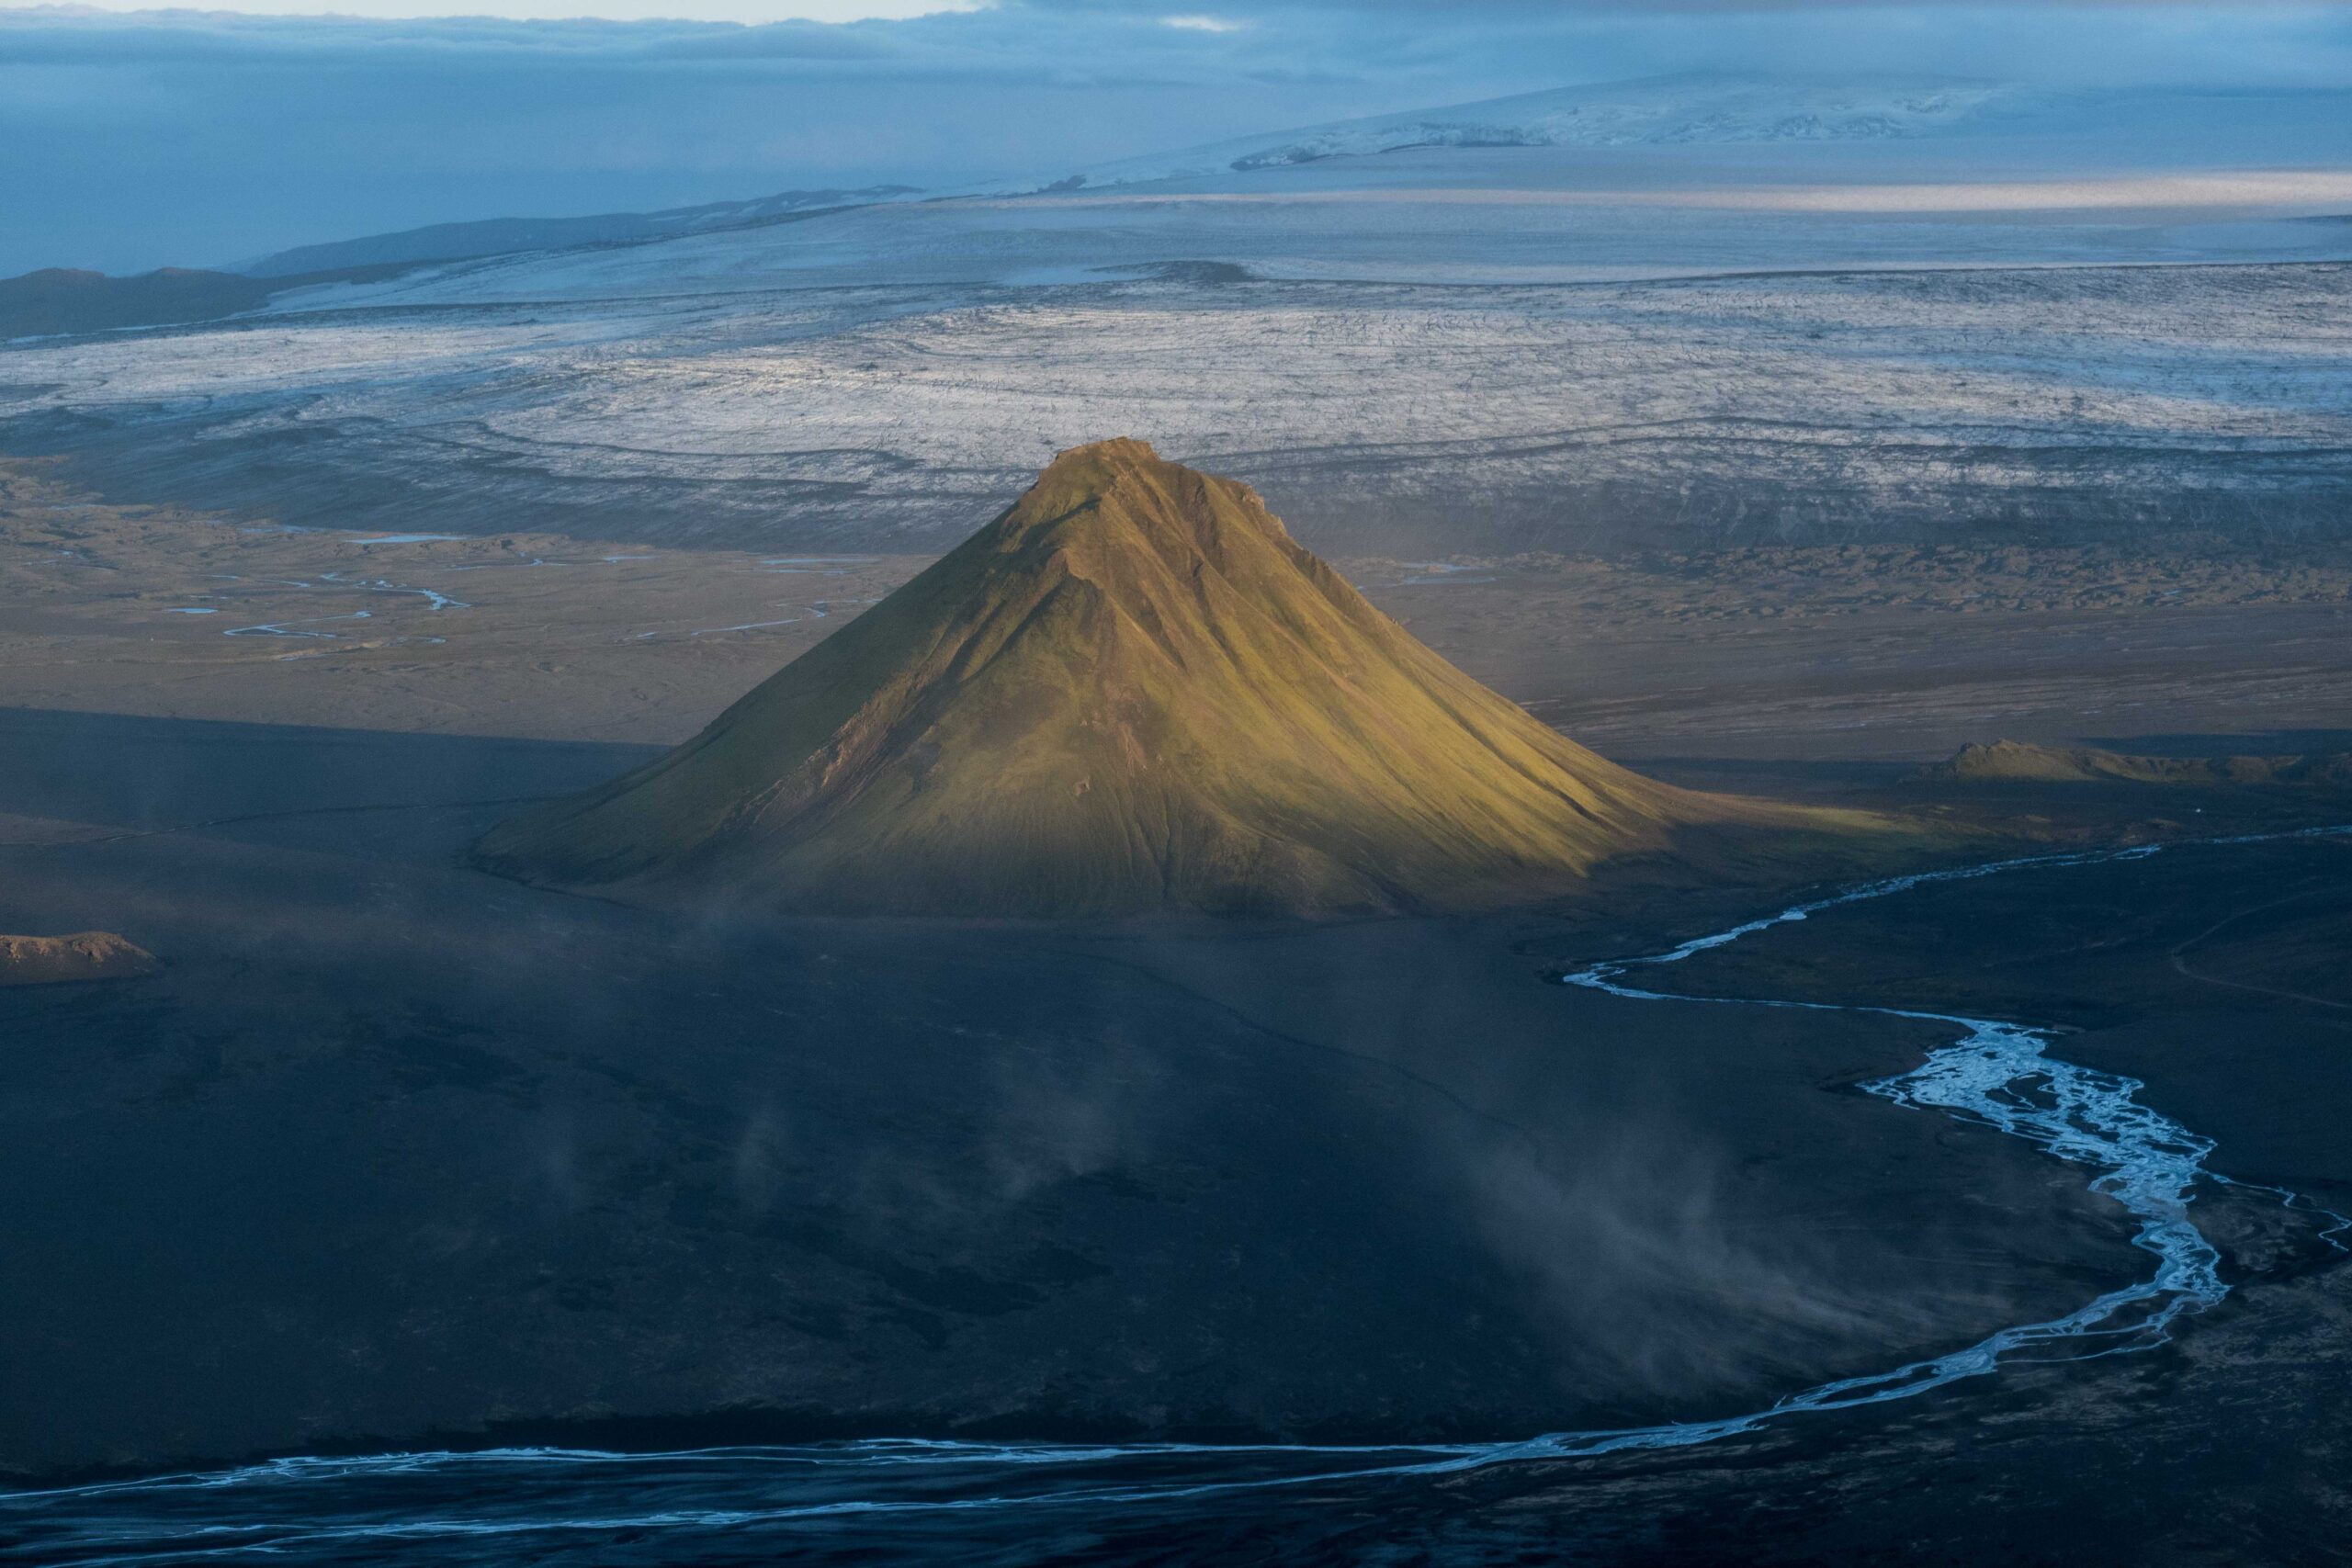 Mælifell gezien vanaf de berg Strútur, juli 2023. Sléttjökull op de achtergrond.